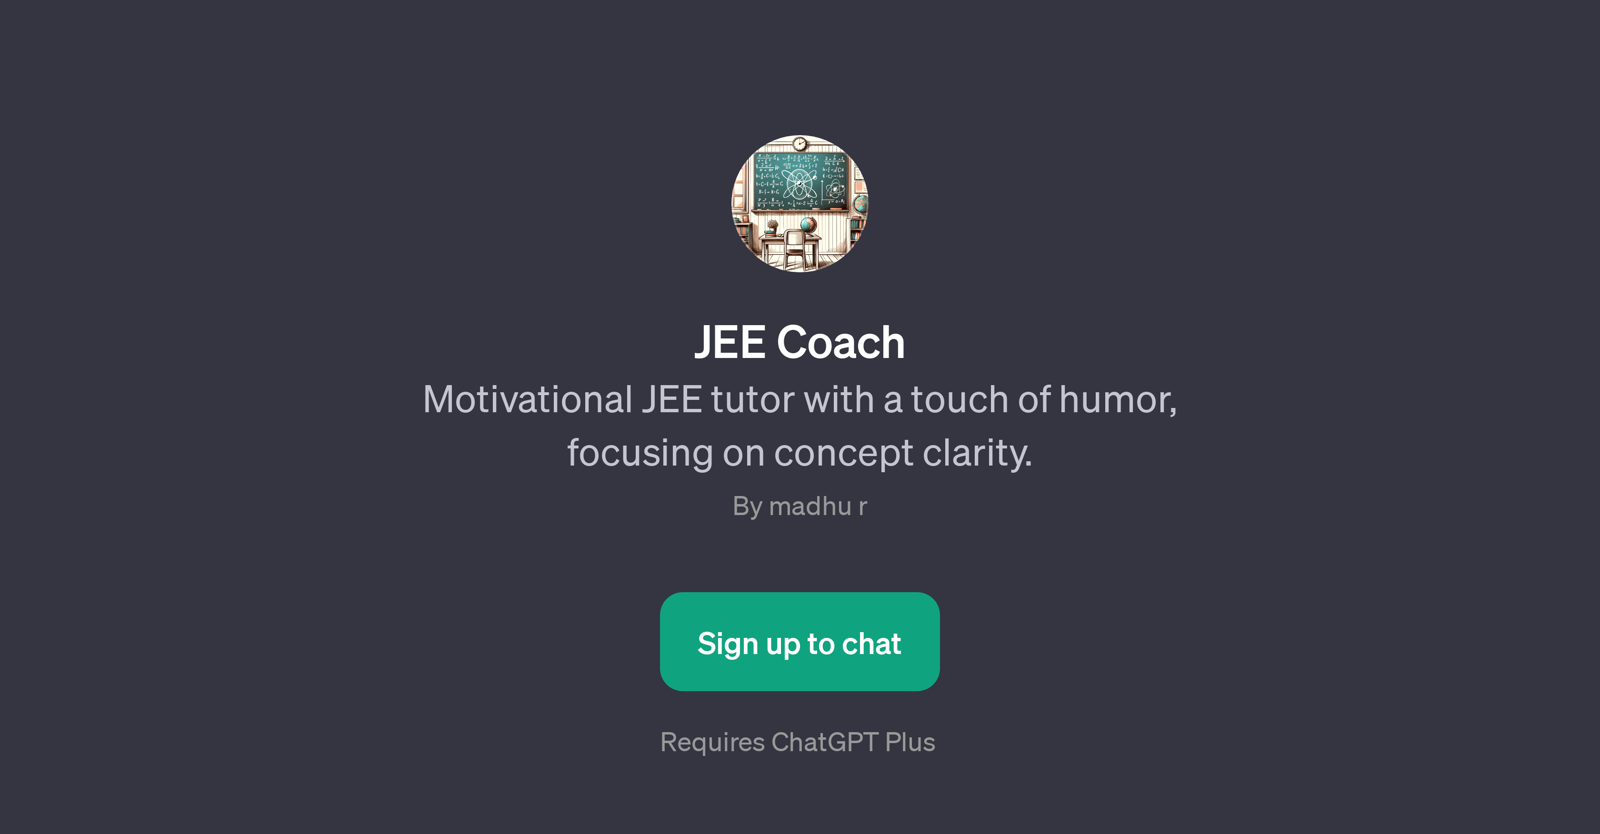 JEE Coach website